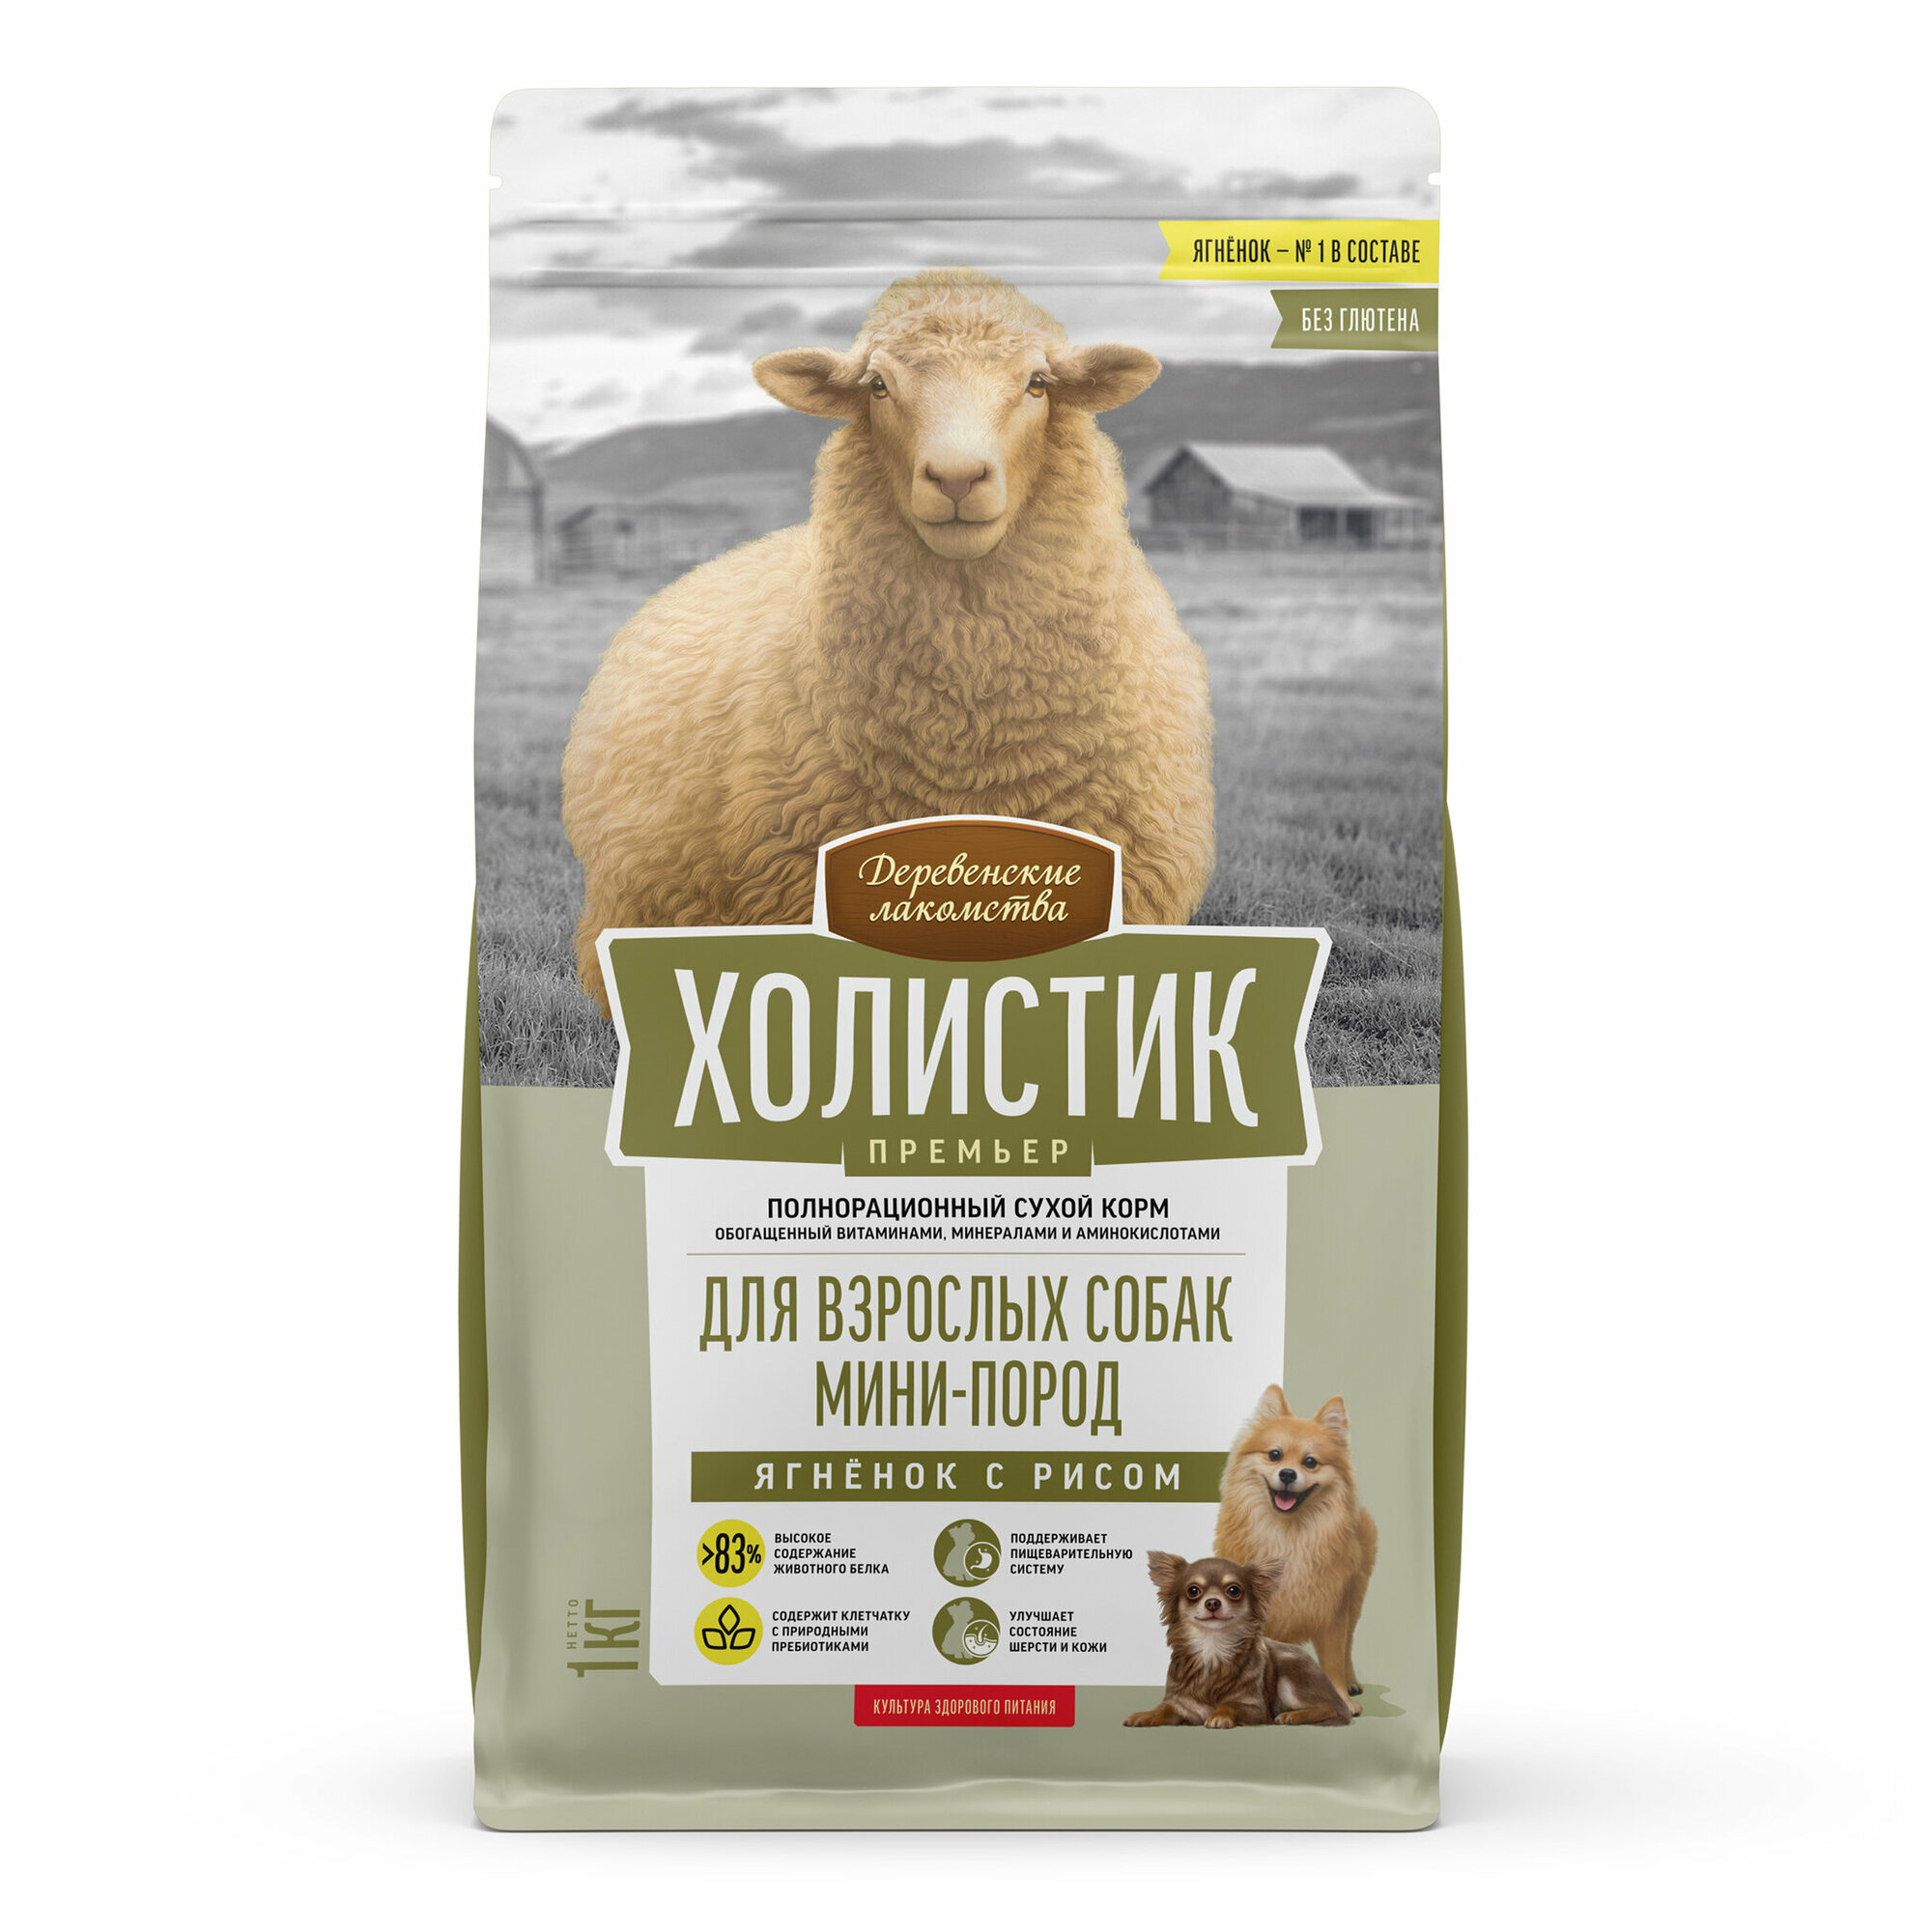 Деревенские лакомства "Холистик" сухой корм для собак мини пород (ягненок с рисом) 1 кг